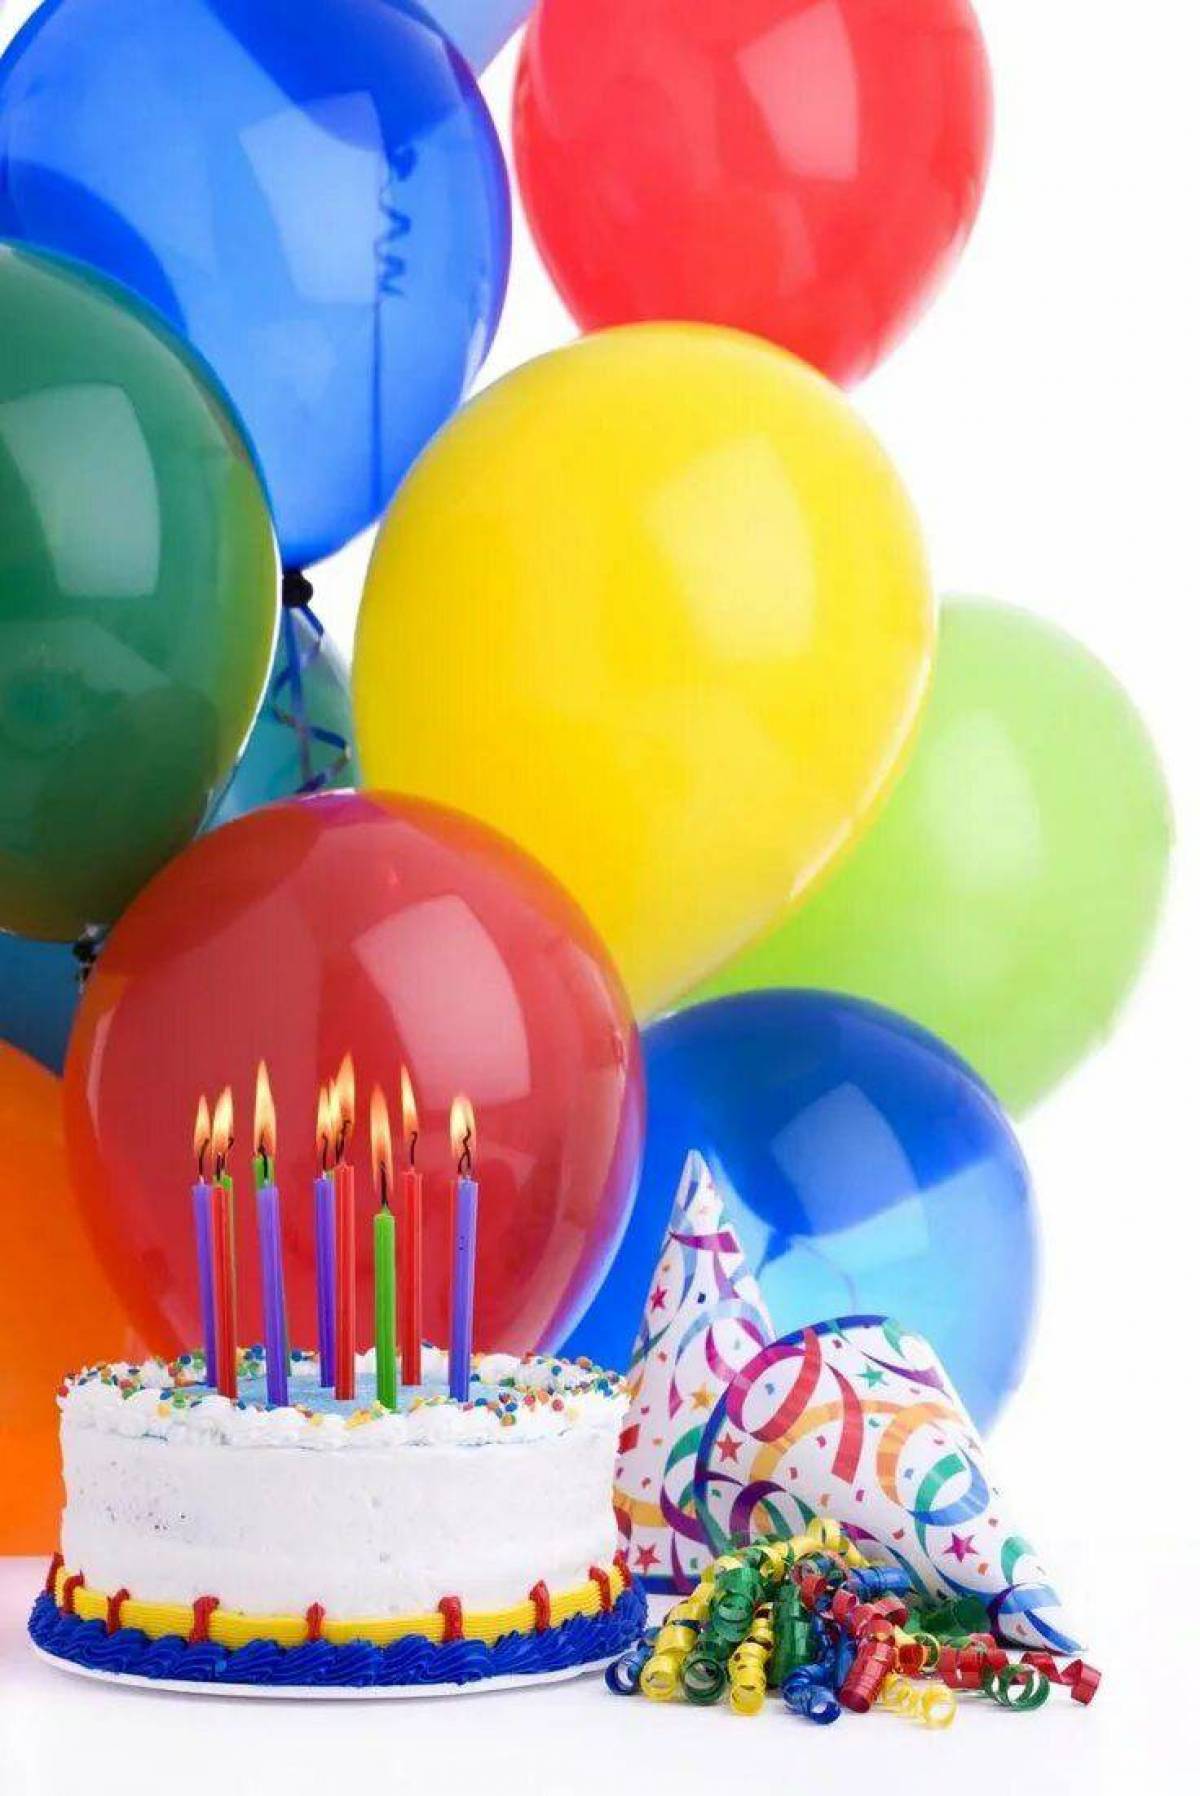 День рождения воздуха. Шары с днем рождения. С днём рождения шарики воздушные. Поздравительные открытки с шарами. Красивые шары на день рождения.